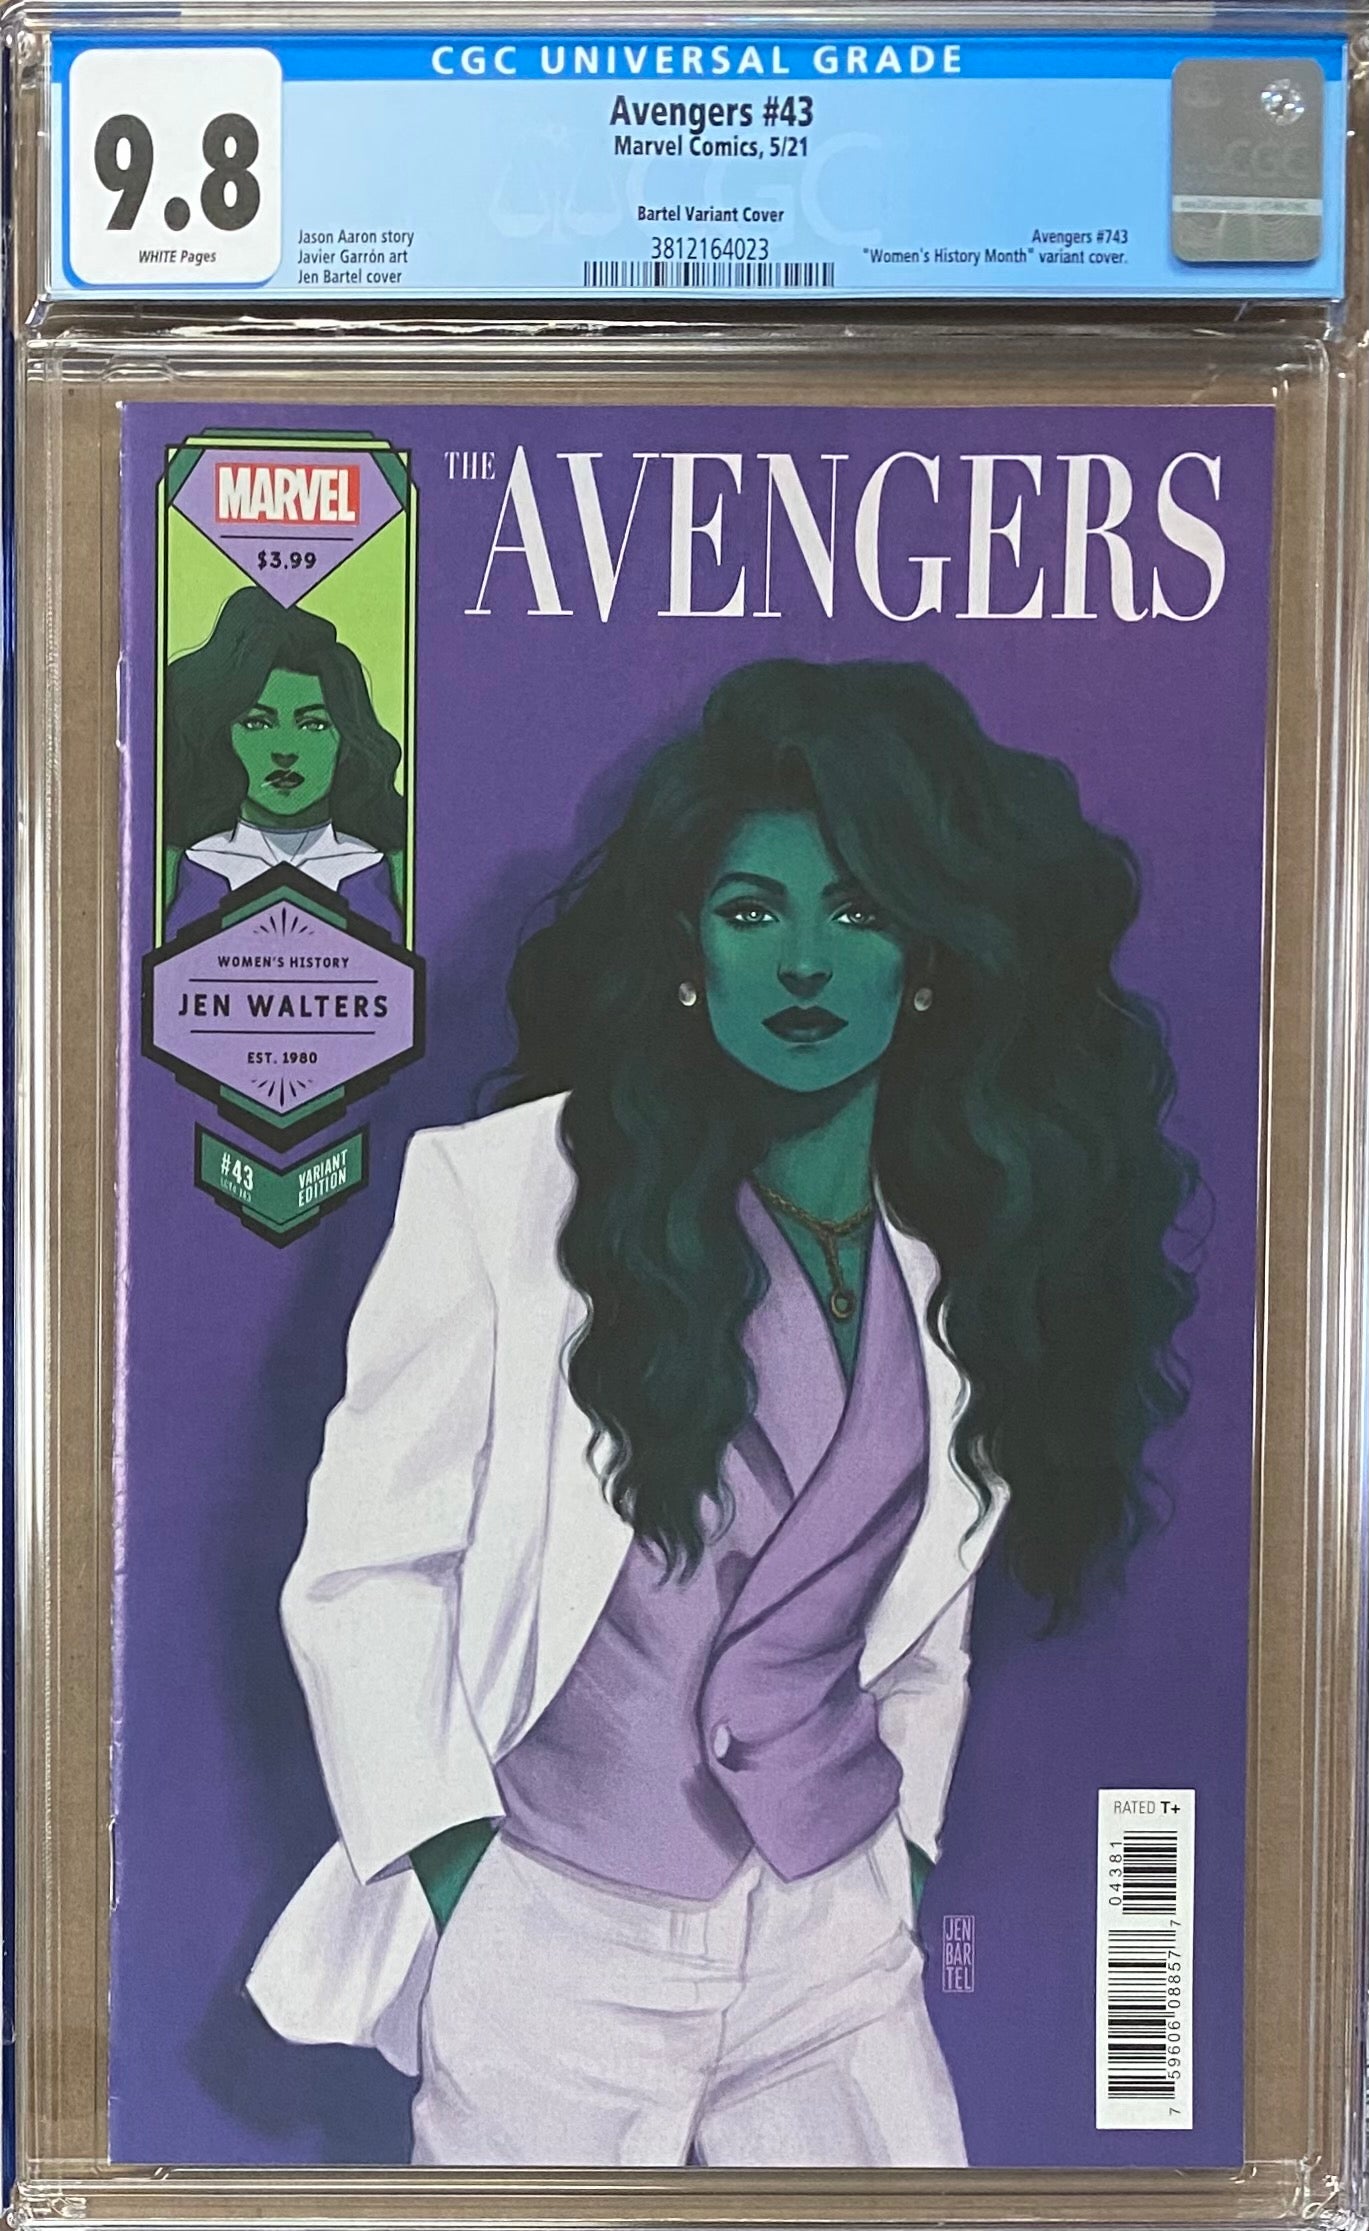 Avengers #43 She-Hulk "Women's History Month" Variant CGC 9.8